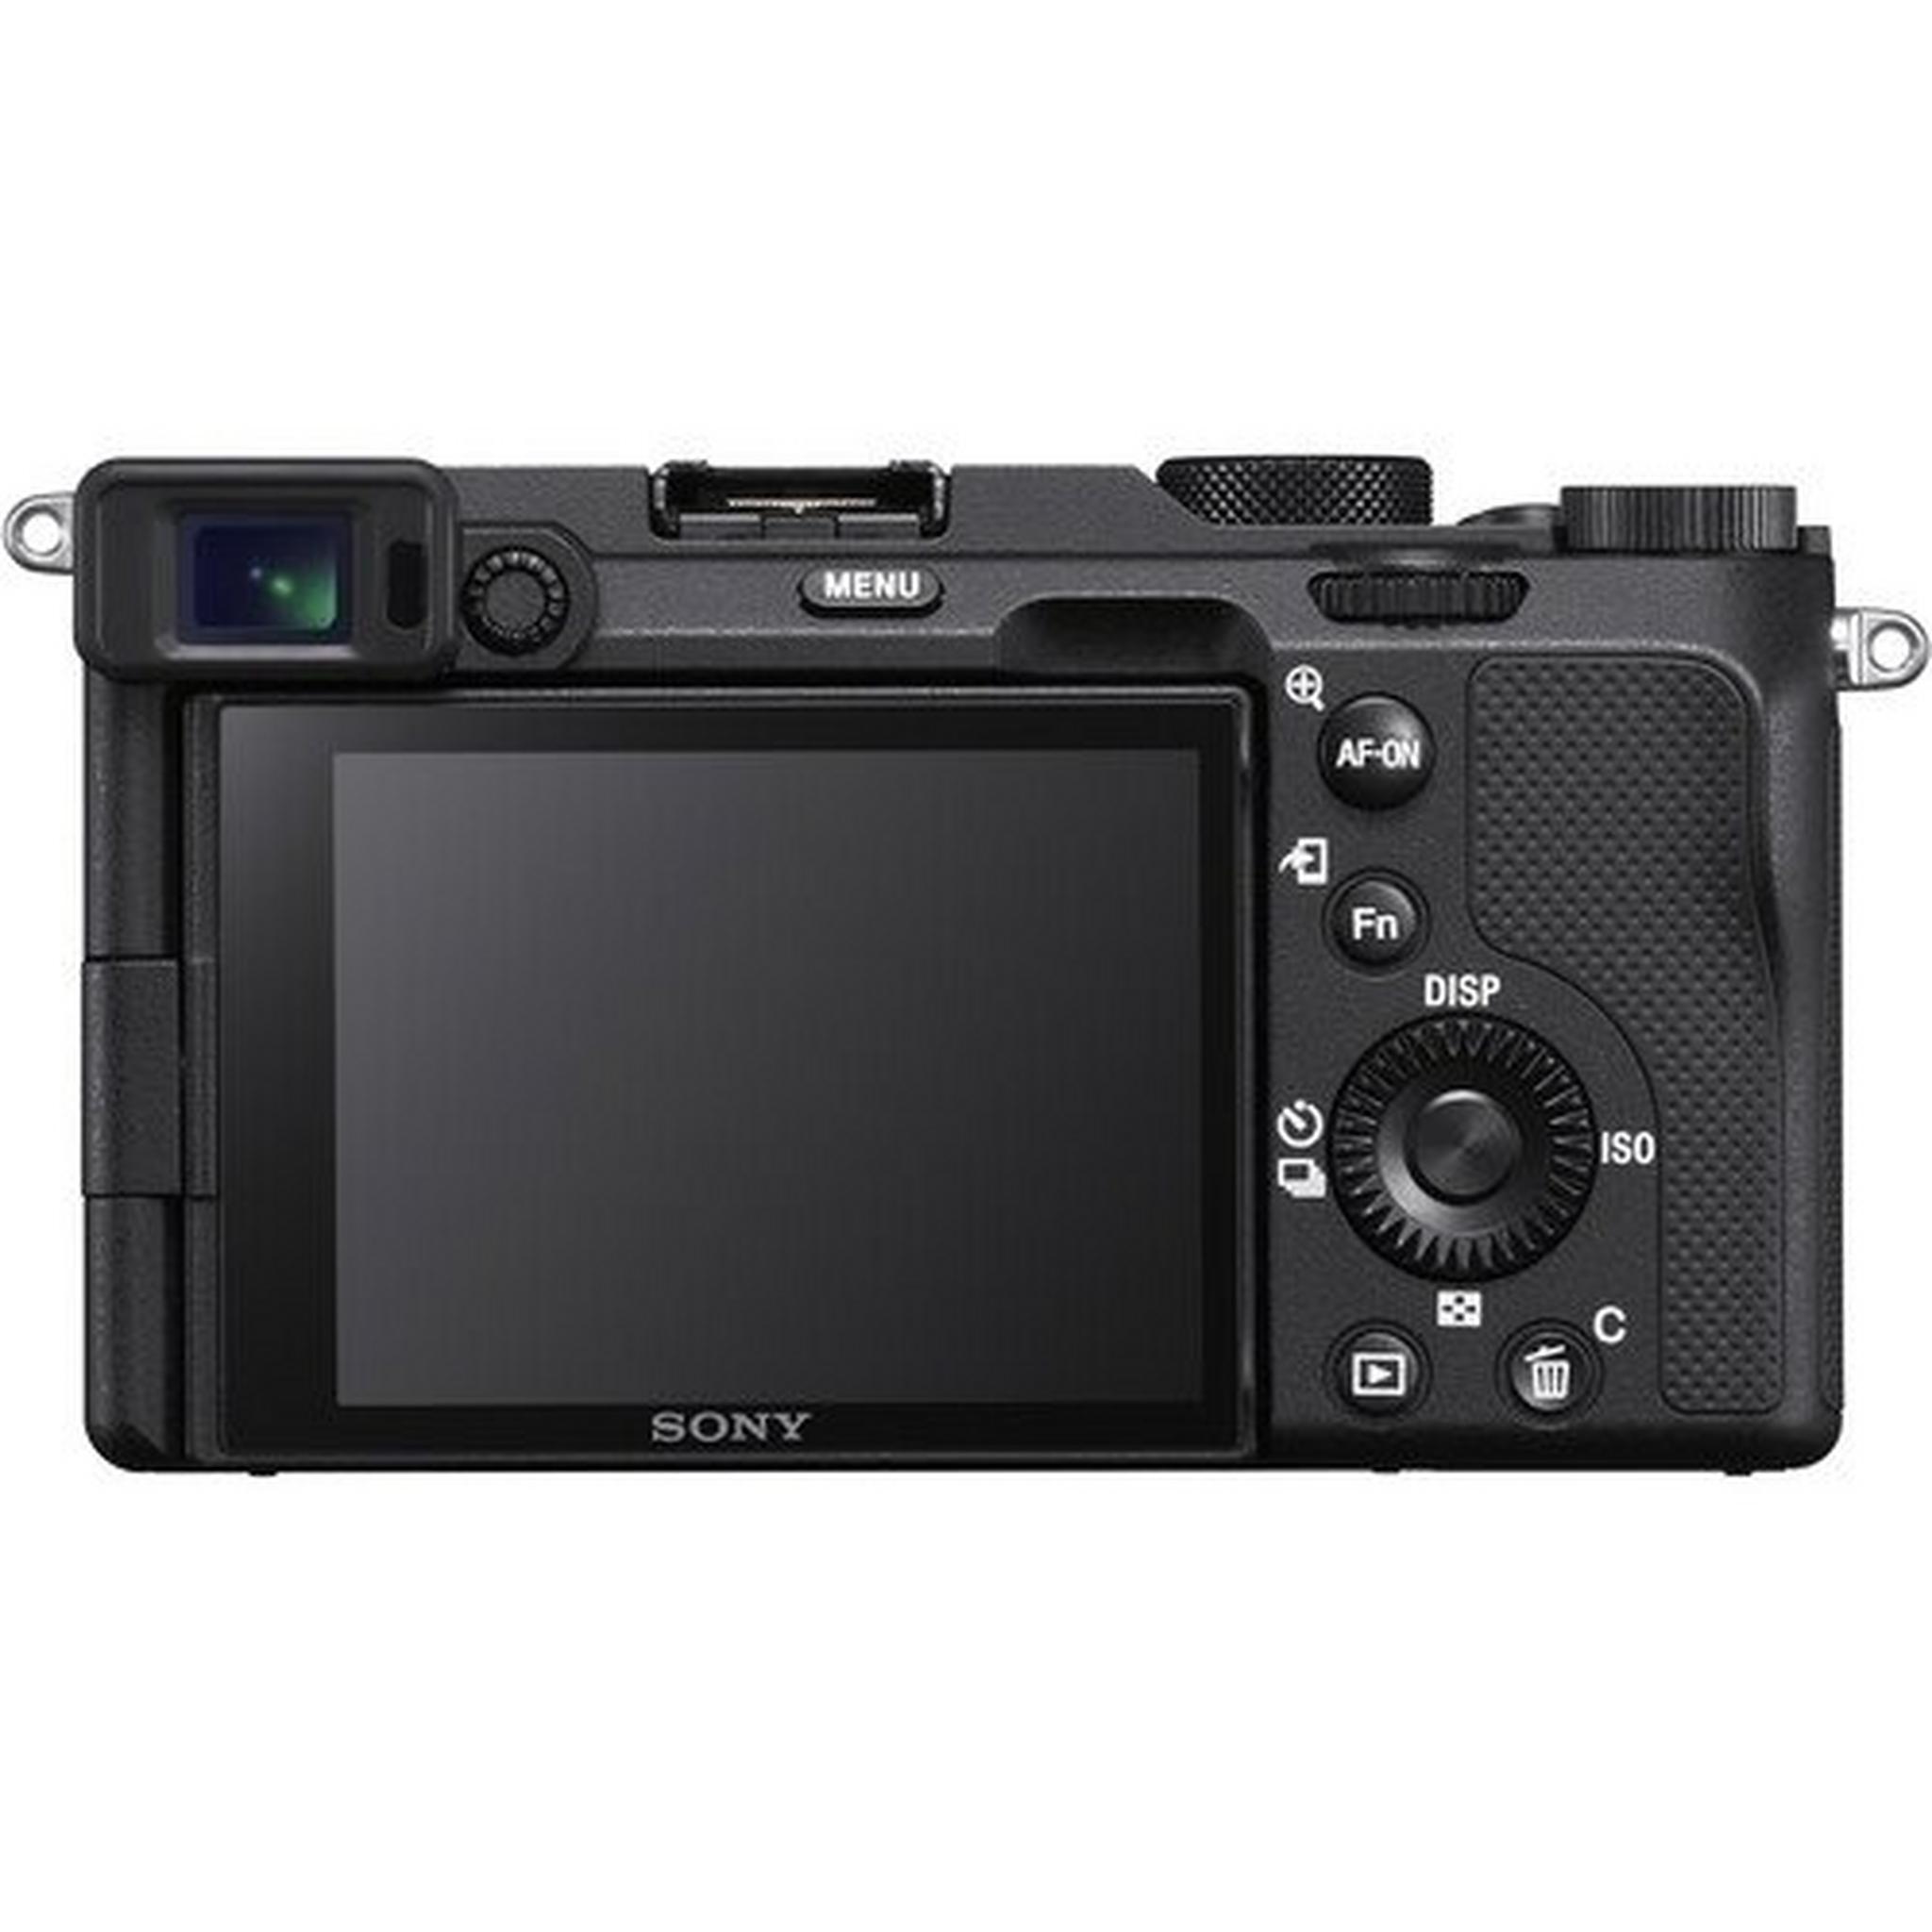 كاميرا سوني الفا ايه 7 سي الرقمية بدون مرآه (هيكل فقط) - أسود